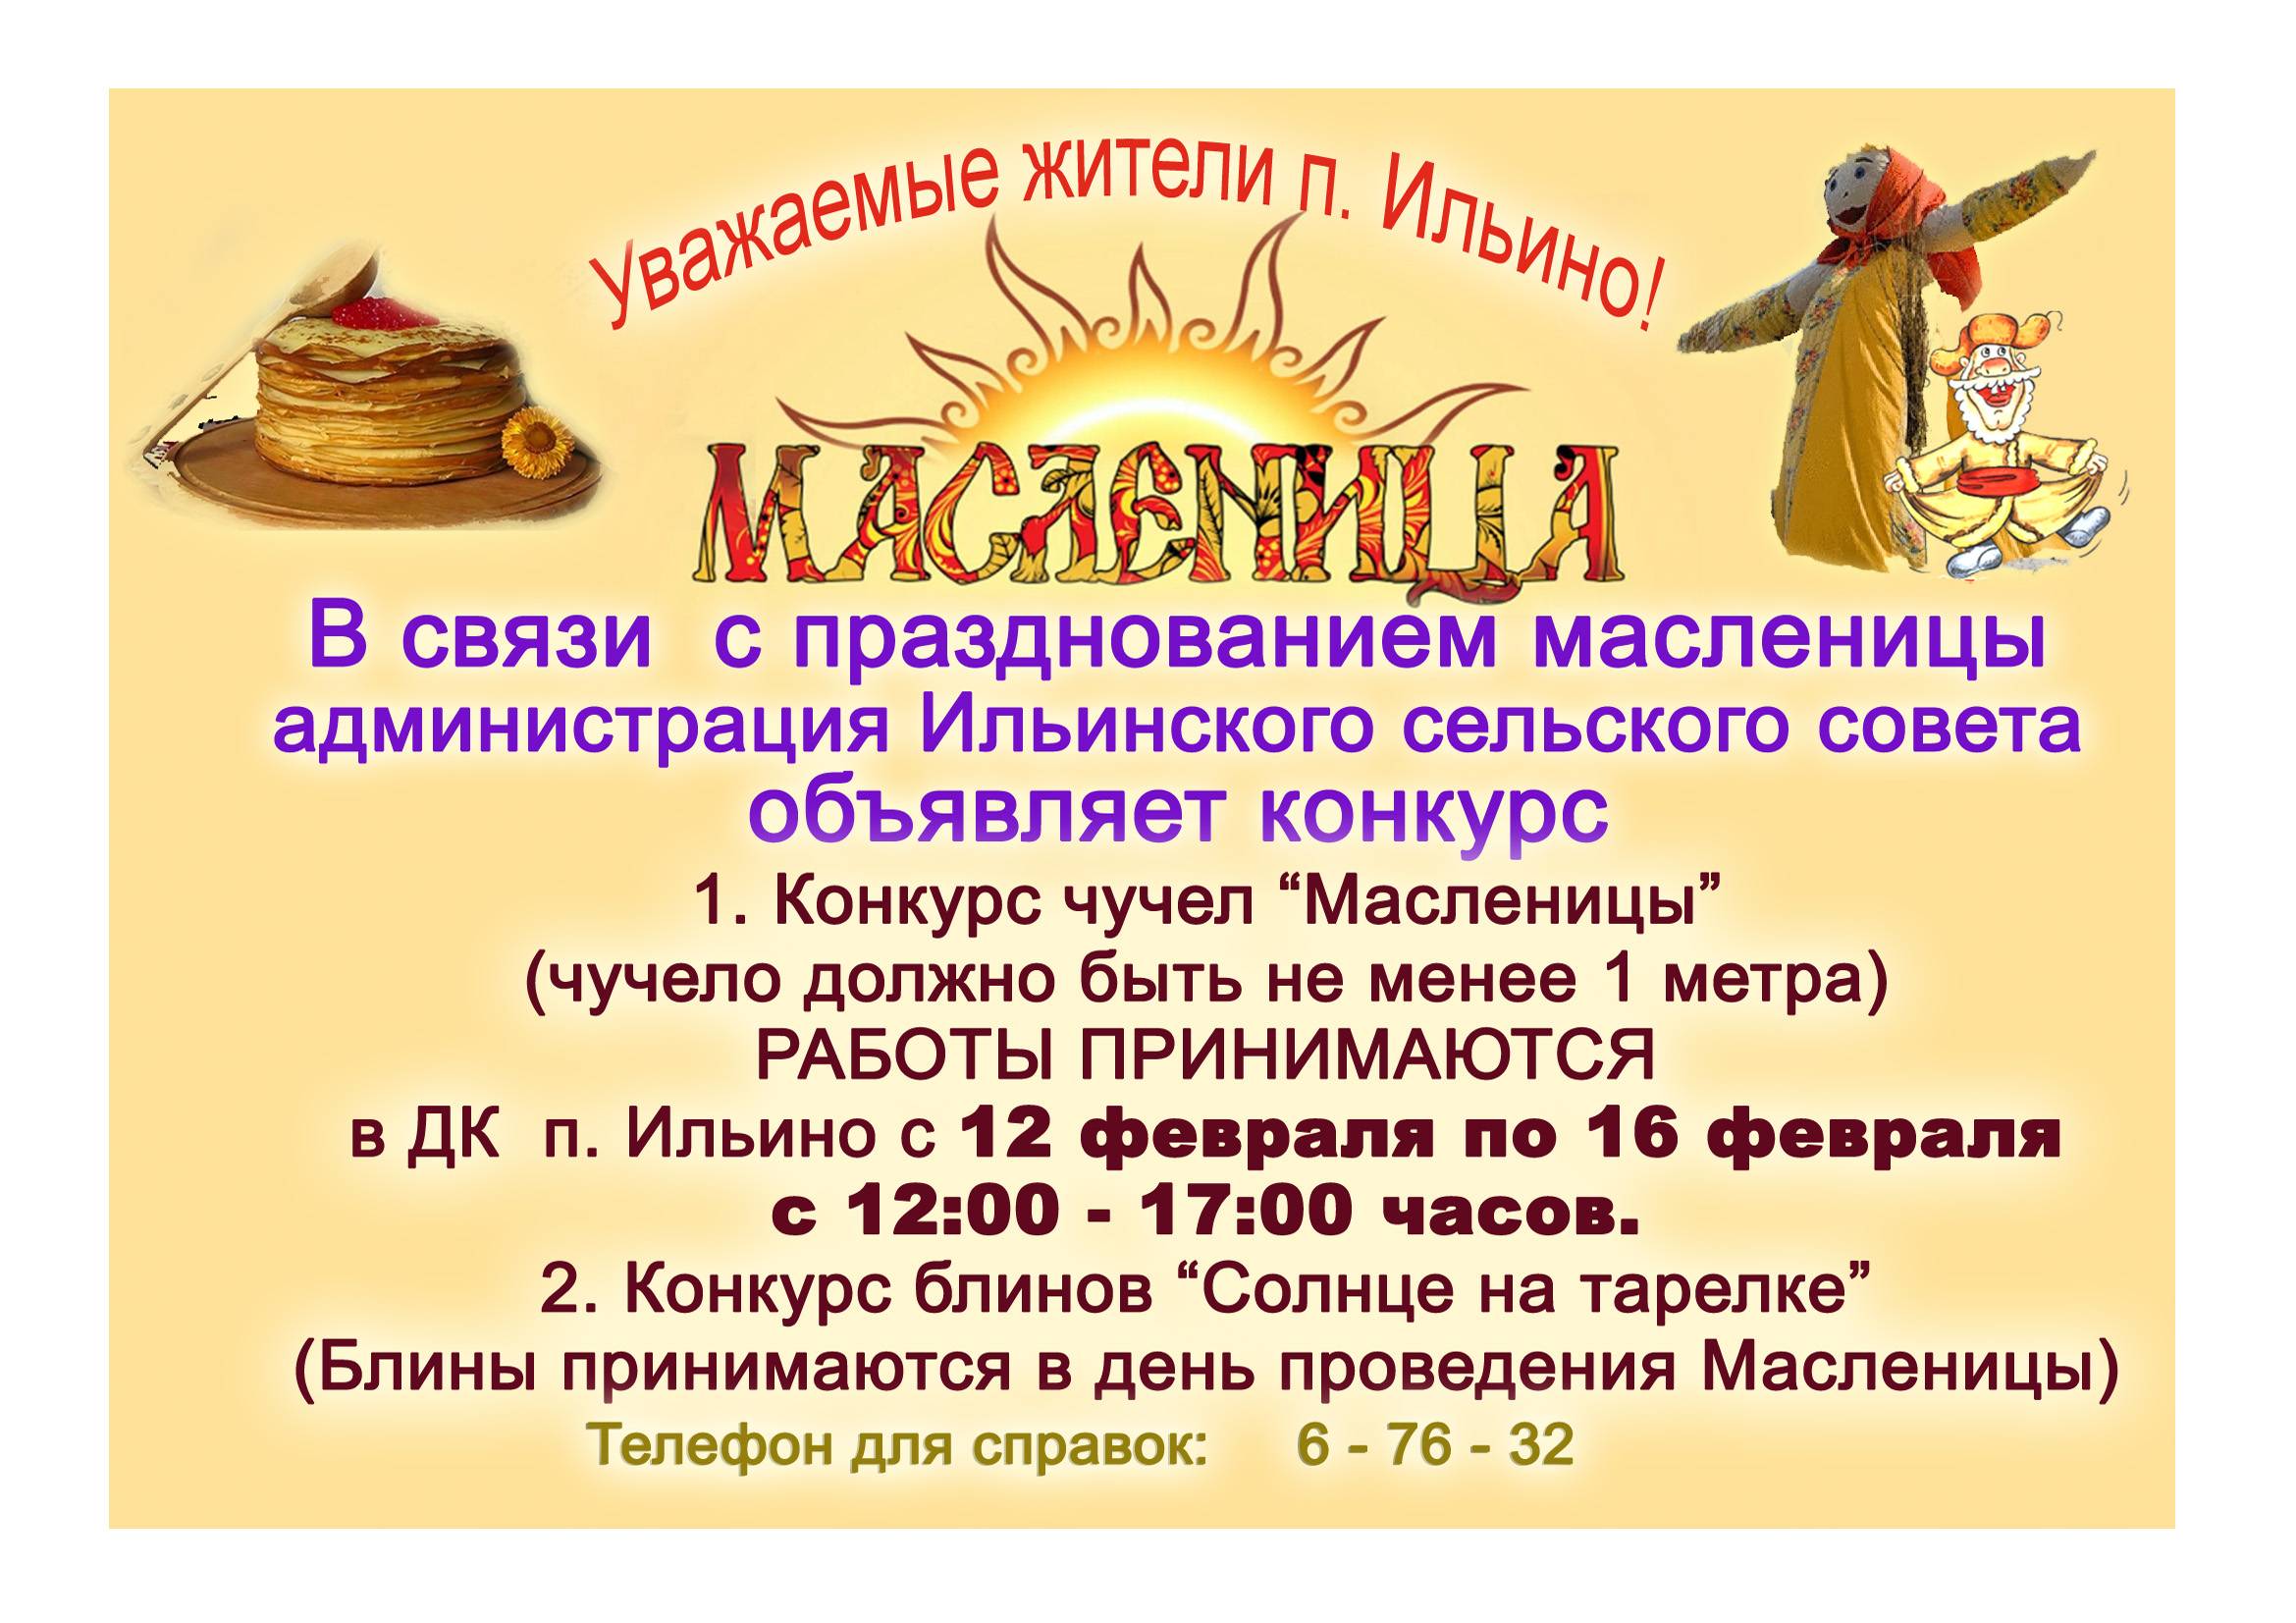 Приглашаем всех на масленичные гуляния в ленинградской области!!!